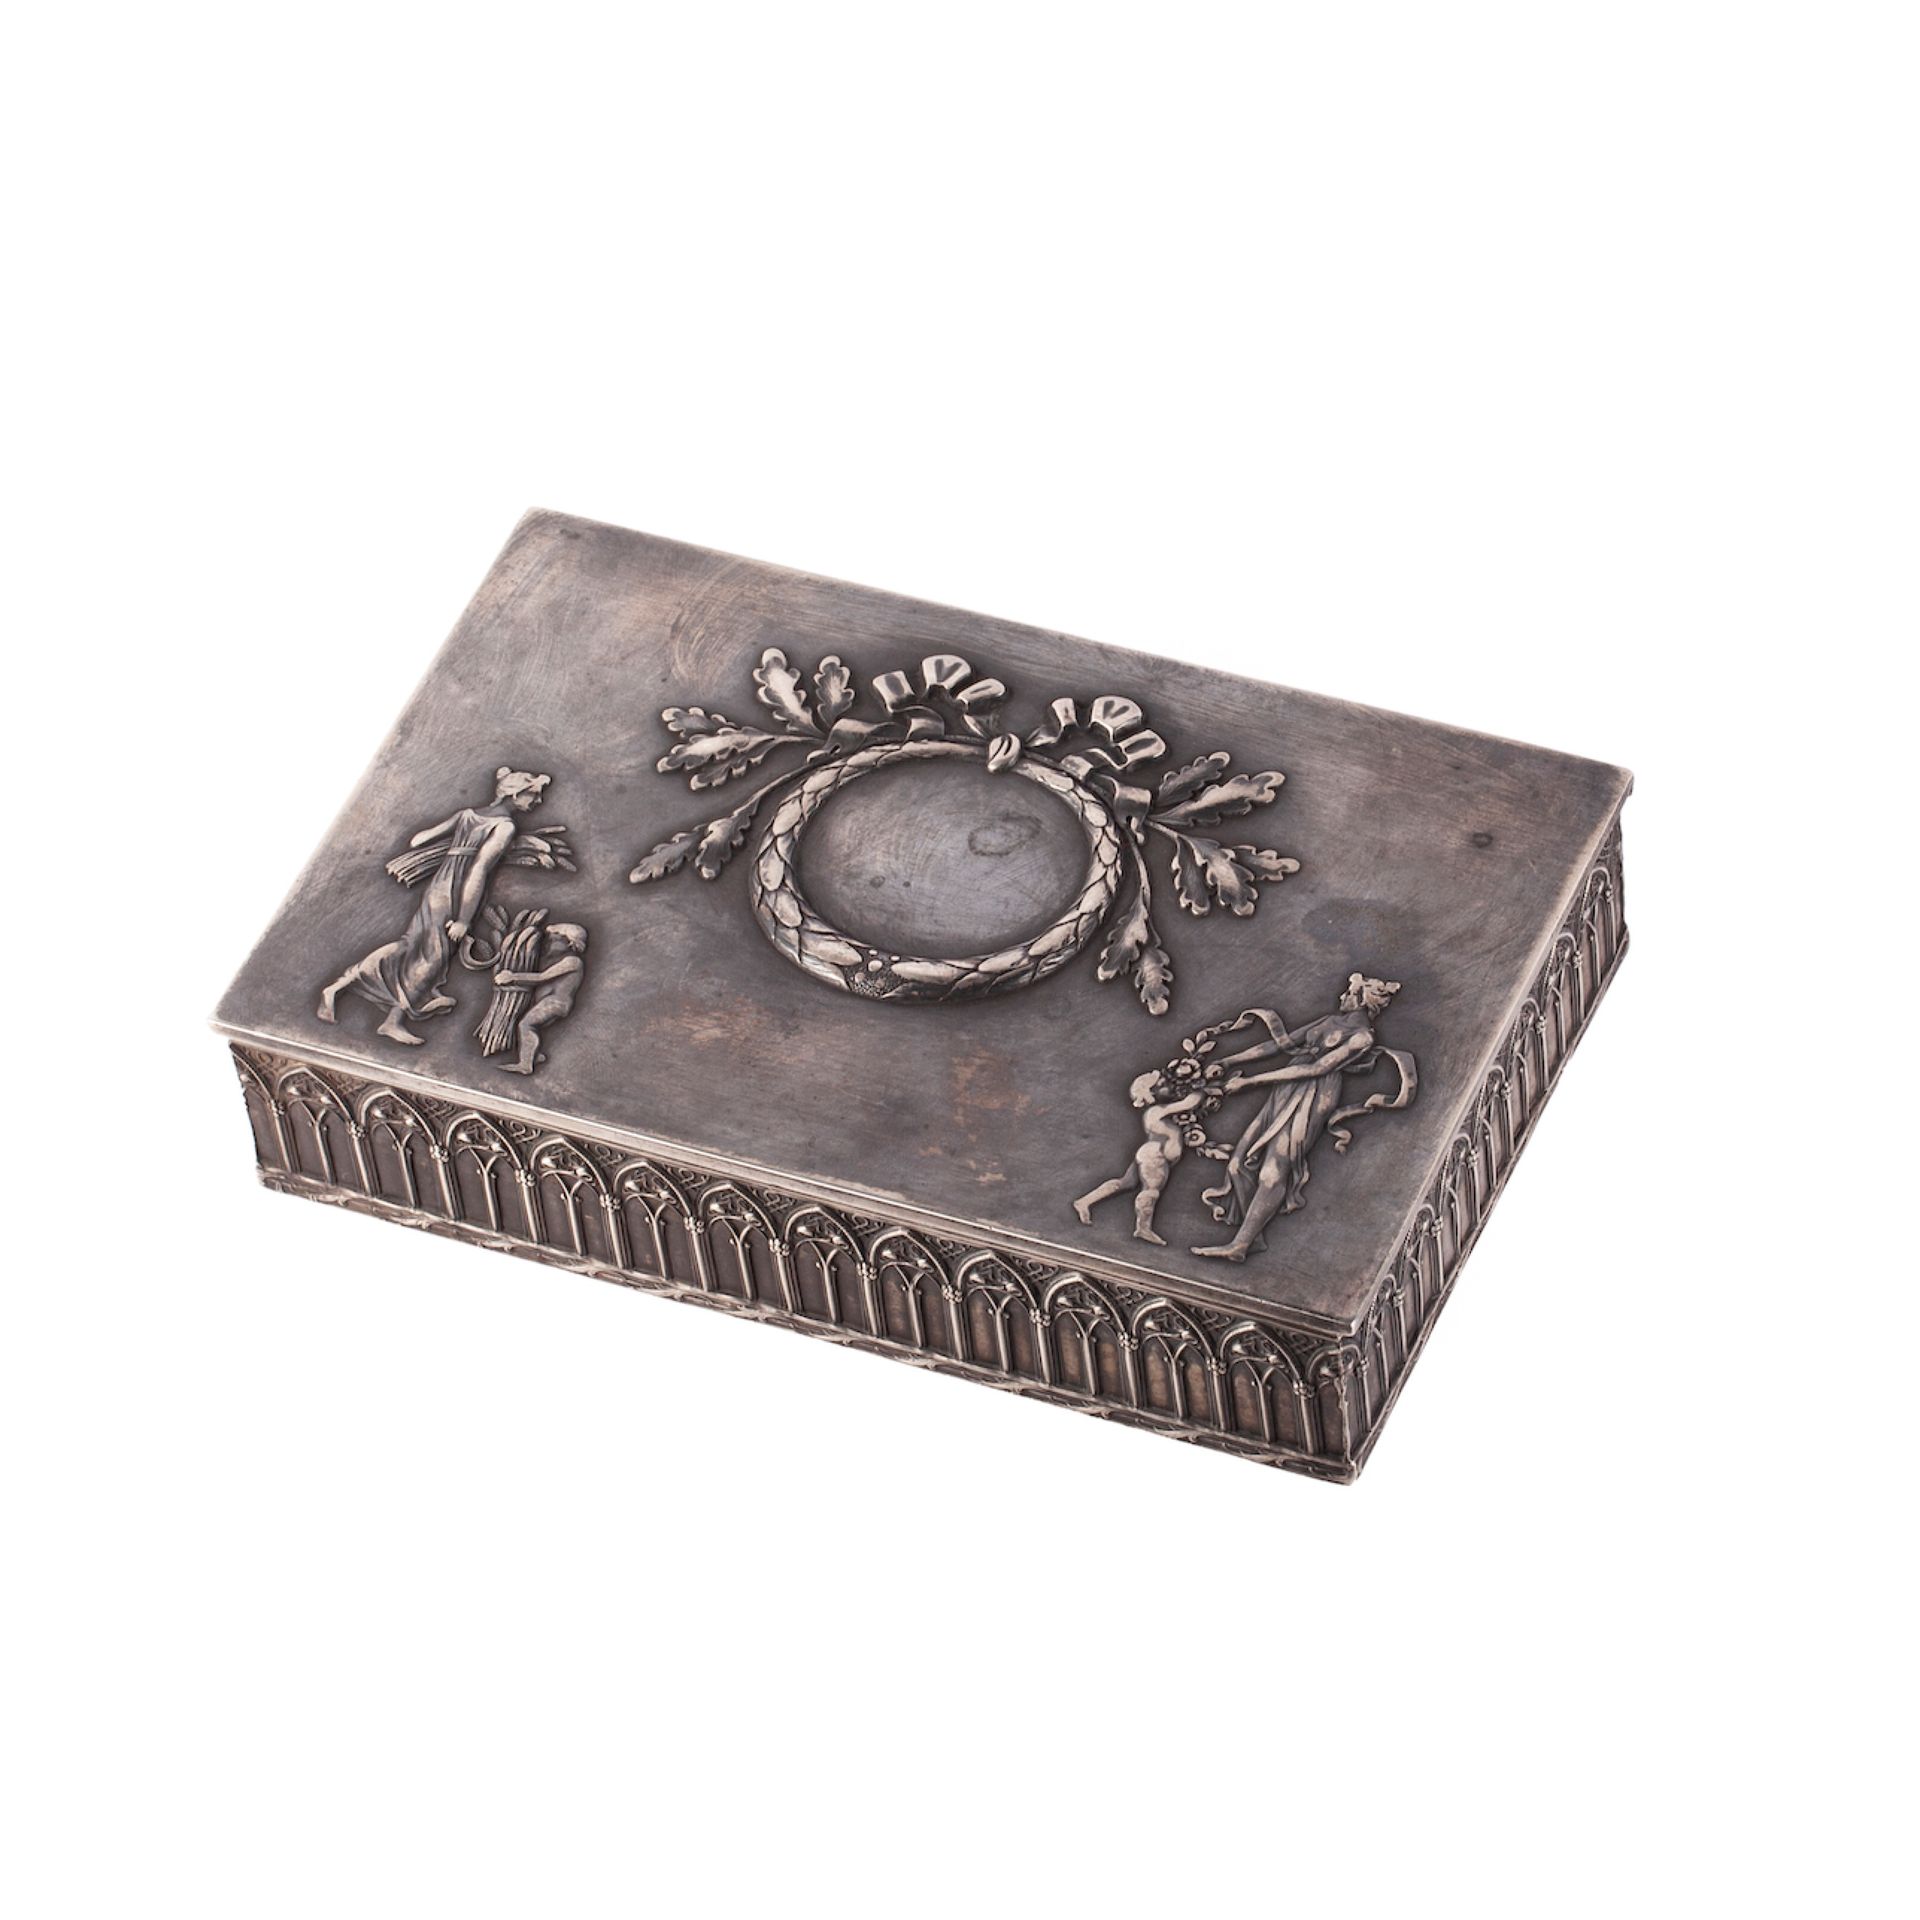 Null 新古典主义风格的雪茄盒。银，铸造，压花，镀金。I.P.赫列布尼科夫制造，他是埃-伊-赫列布尼科夫法庭的供应商。莫斯科。1908-1917年。尺寸：21&hellip;